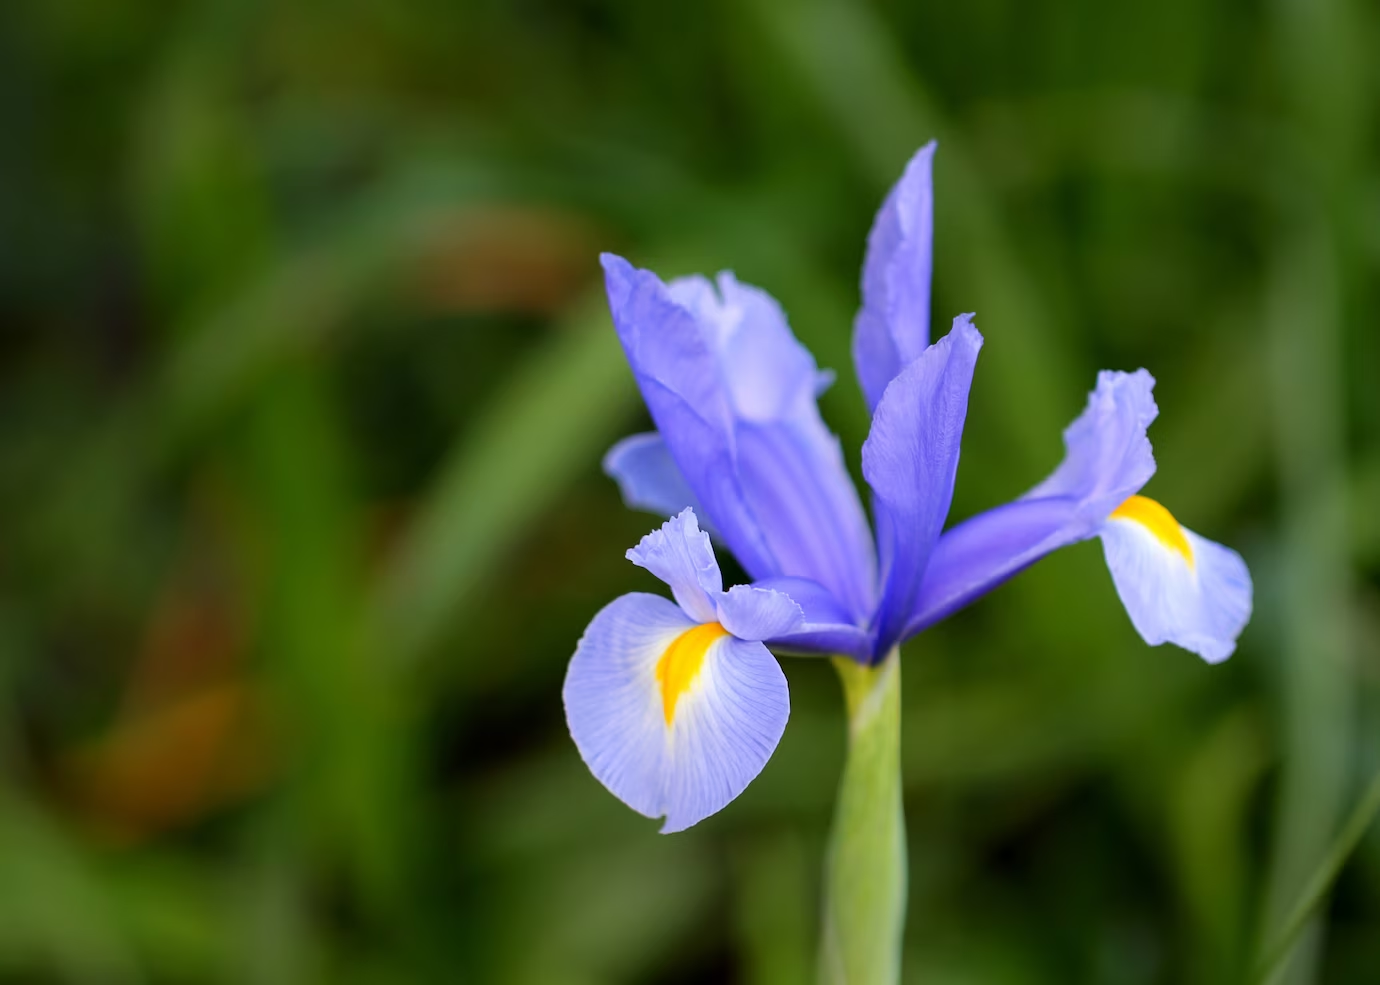 Dutch Irises